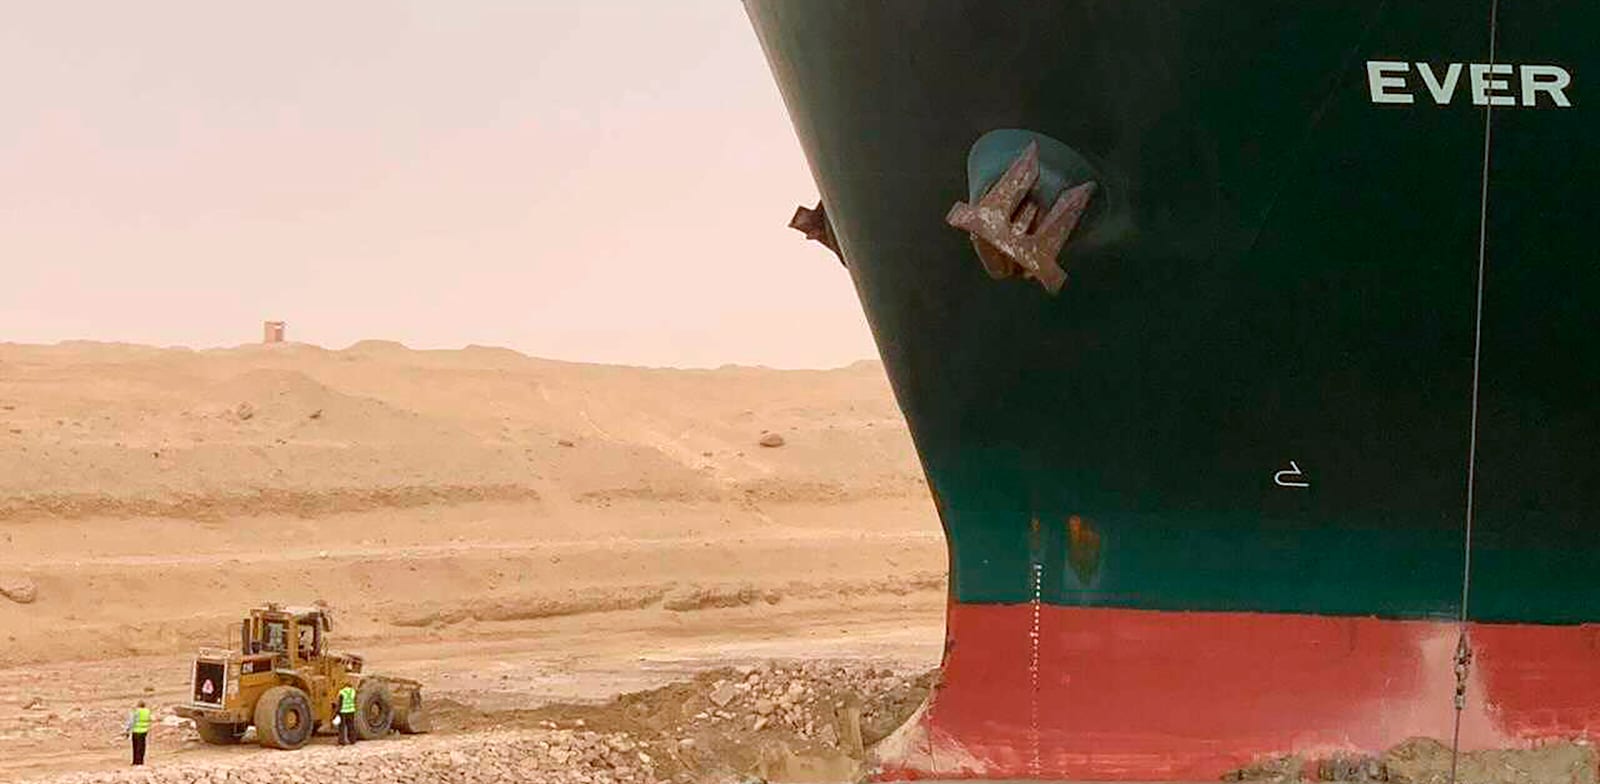 ספינת הענק האבר גיבן תקוע בתעלת סואץ / צילום: Associated Press, Suez Canal Authority